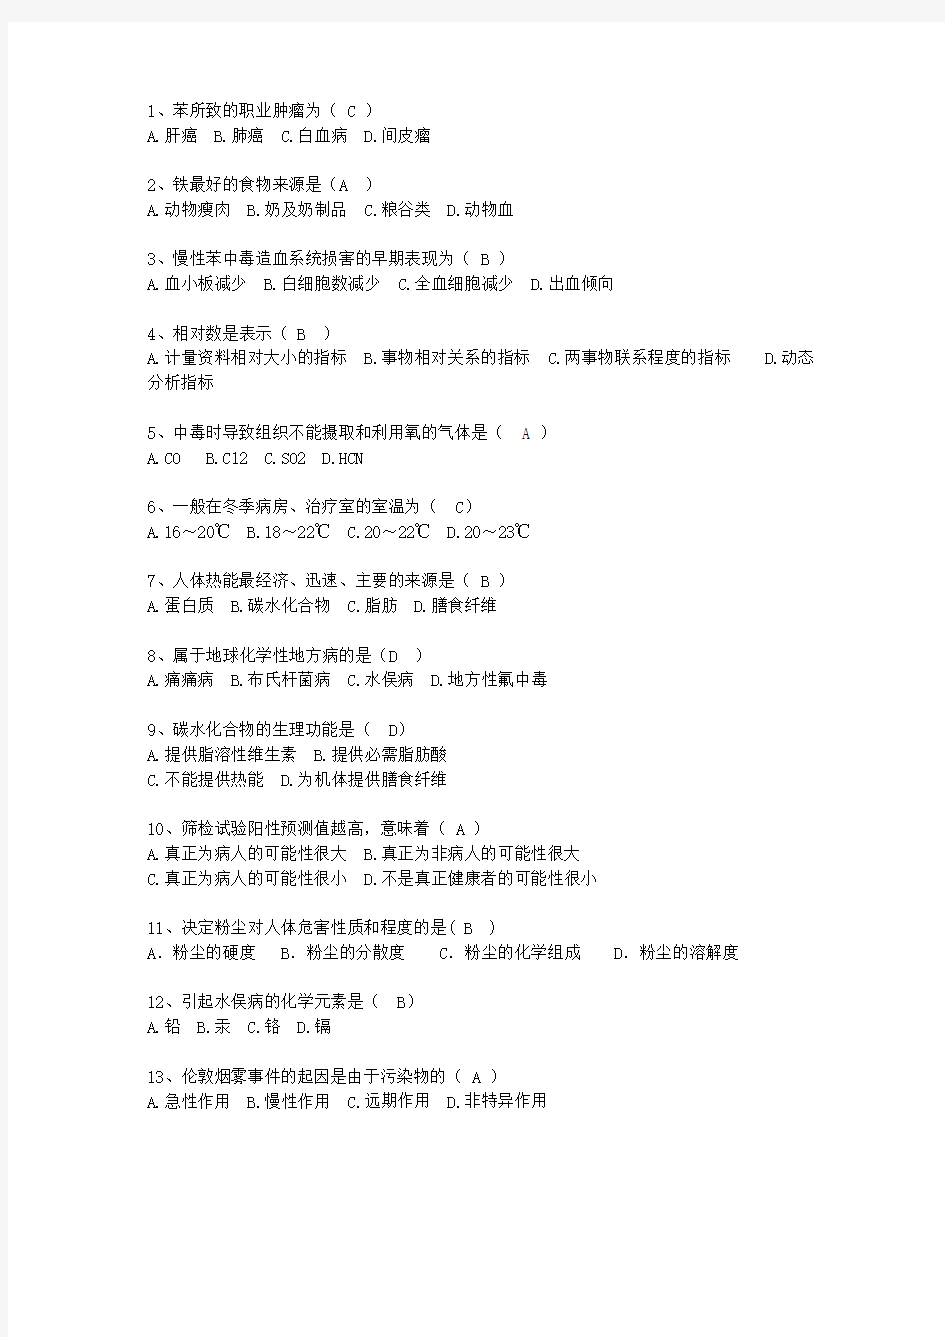 2015贵州省预防医学复习最新考试试题库(完整版)